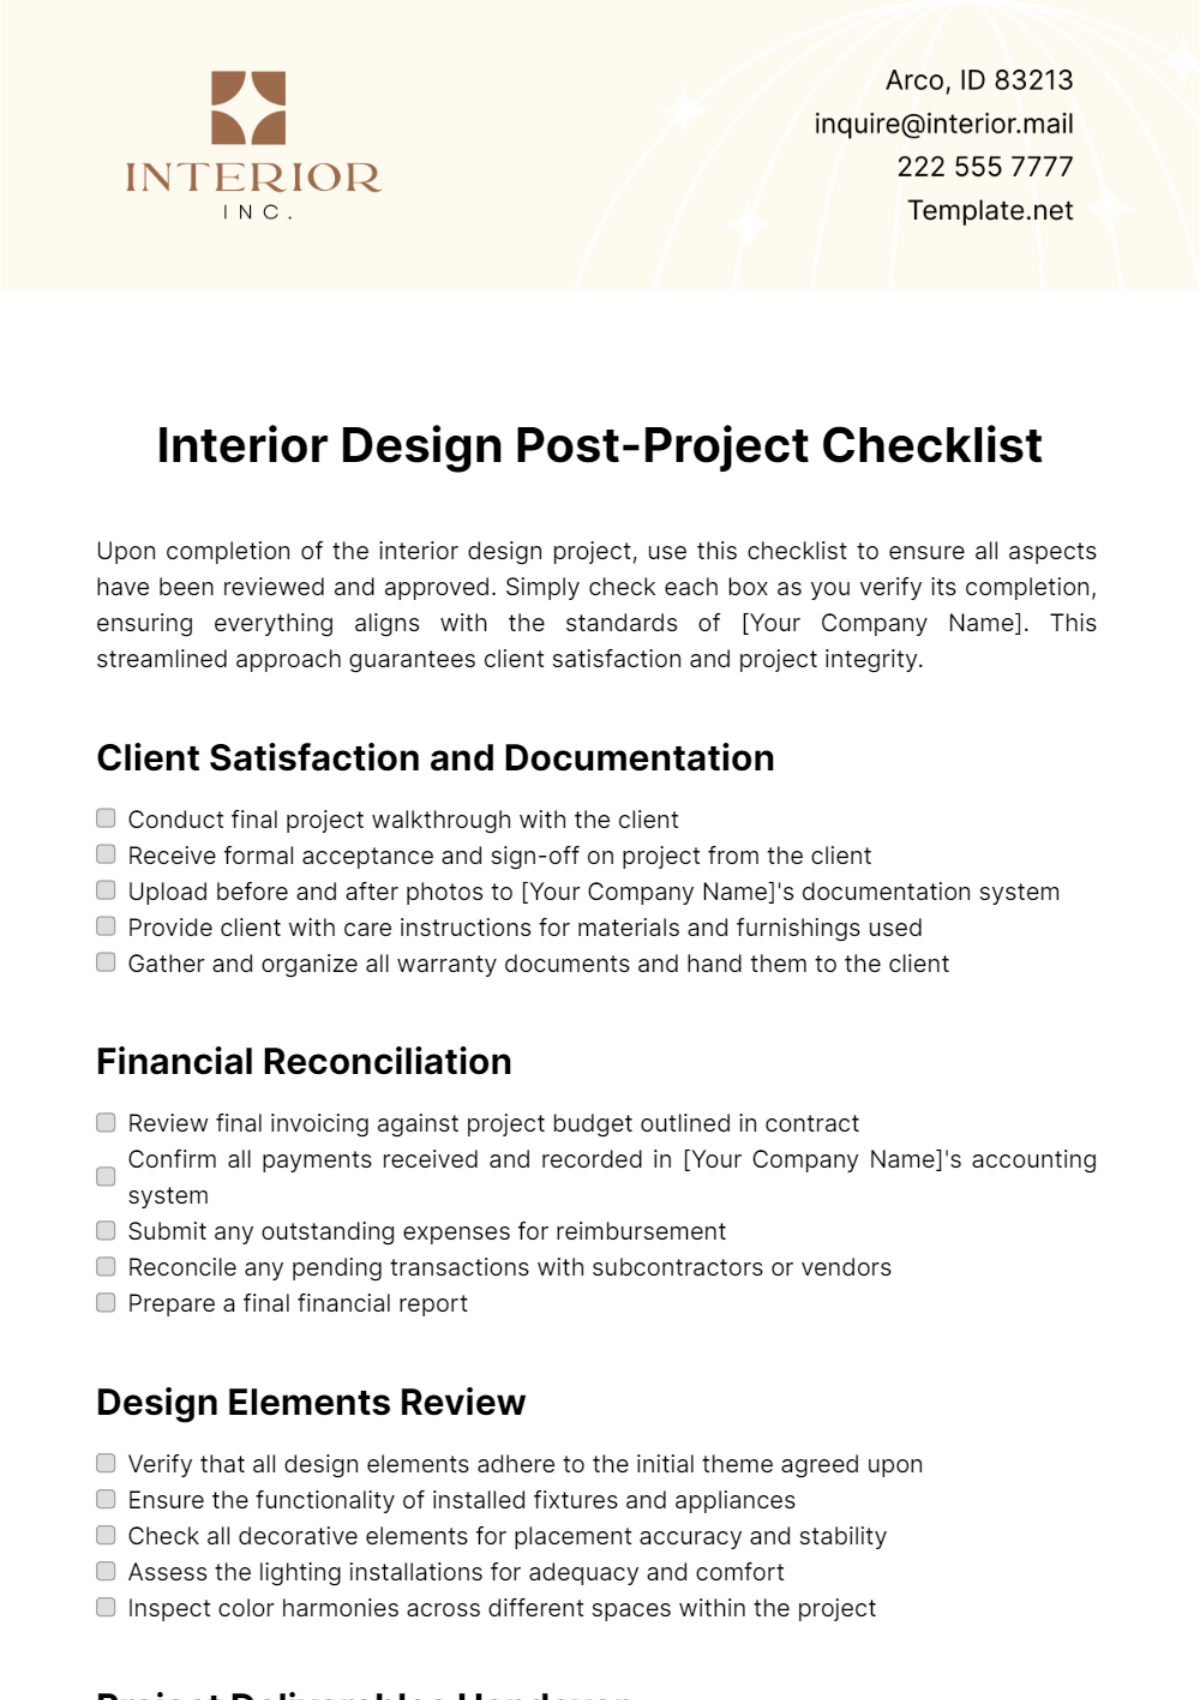 Free Interior Design Post-Project Checklist Template